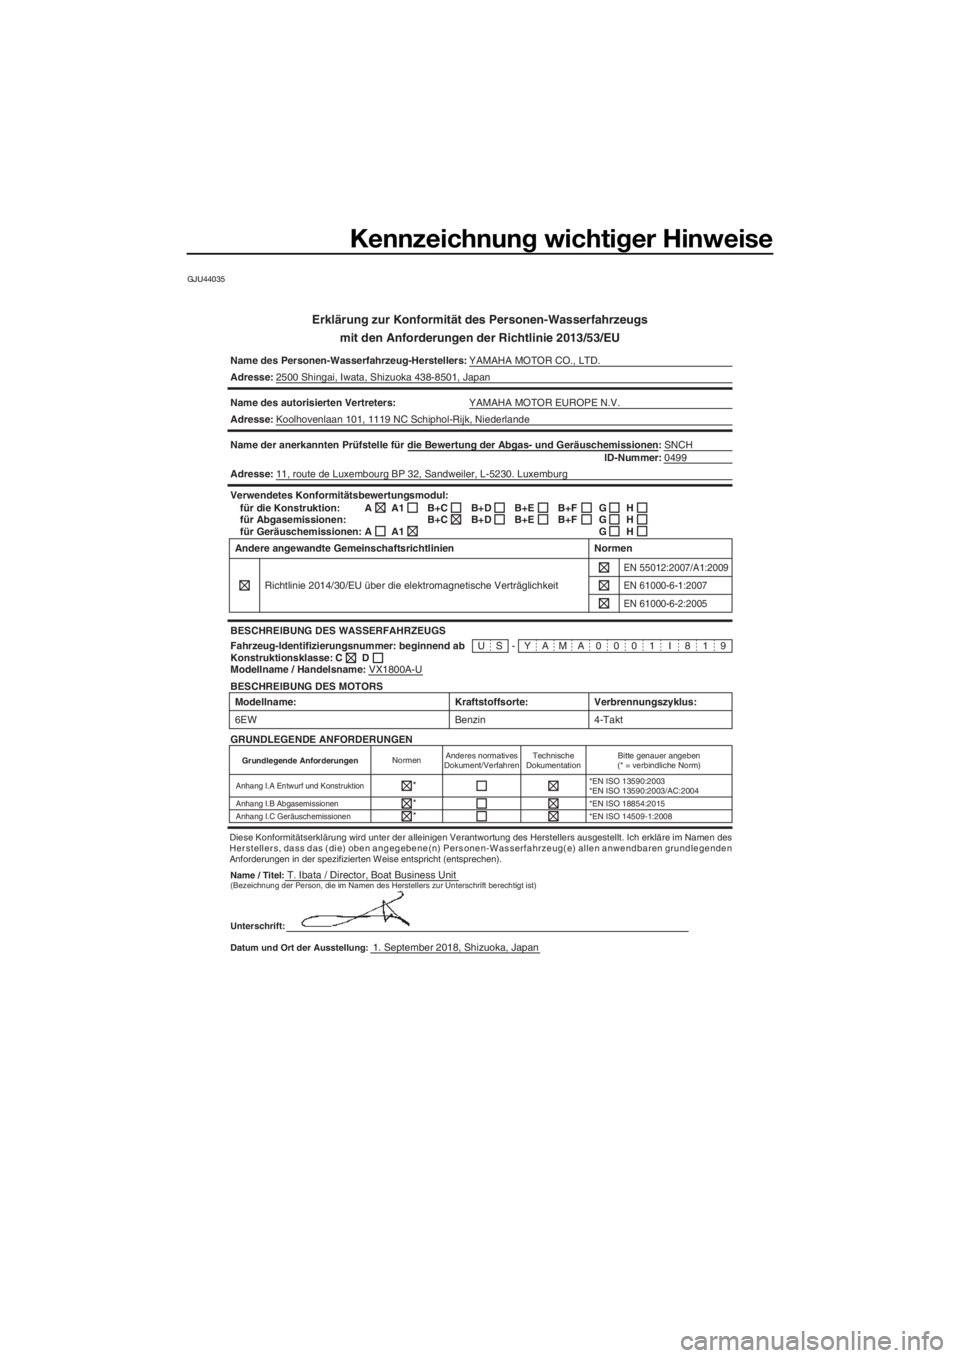 YAMAHA VXR 2019  Betriebsanleitungen (in German) Kennzeichnung wichtiger Hinweise
GJU44035
Erklärung zur Konformität des Personen-Wasserfahrzeugs
mit den Anforderungen der Richtlinie 2013/53/EU
Name des Personen-Wasserfahrzeug-Herstellers:YAMAHA M